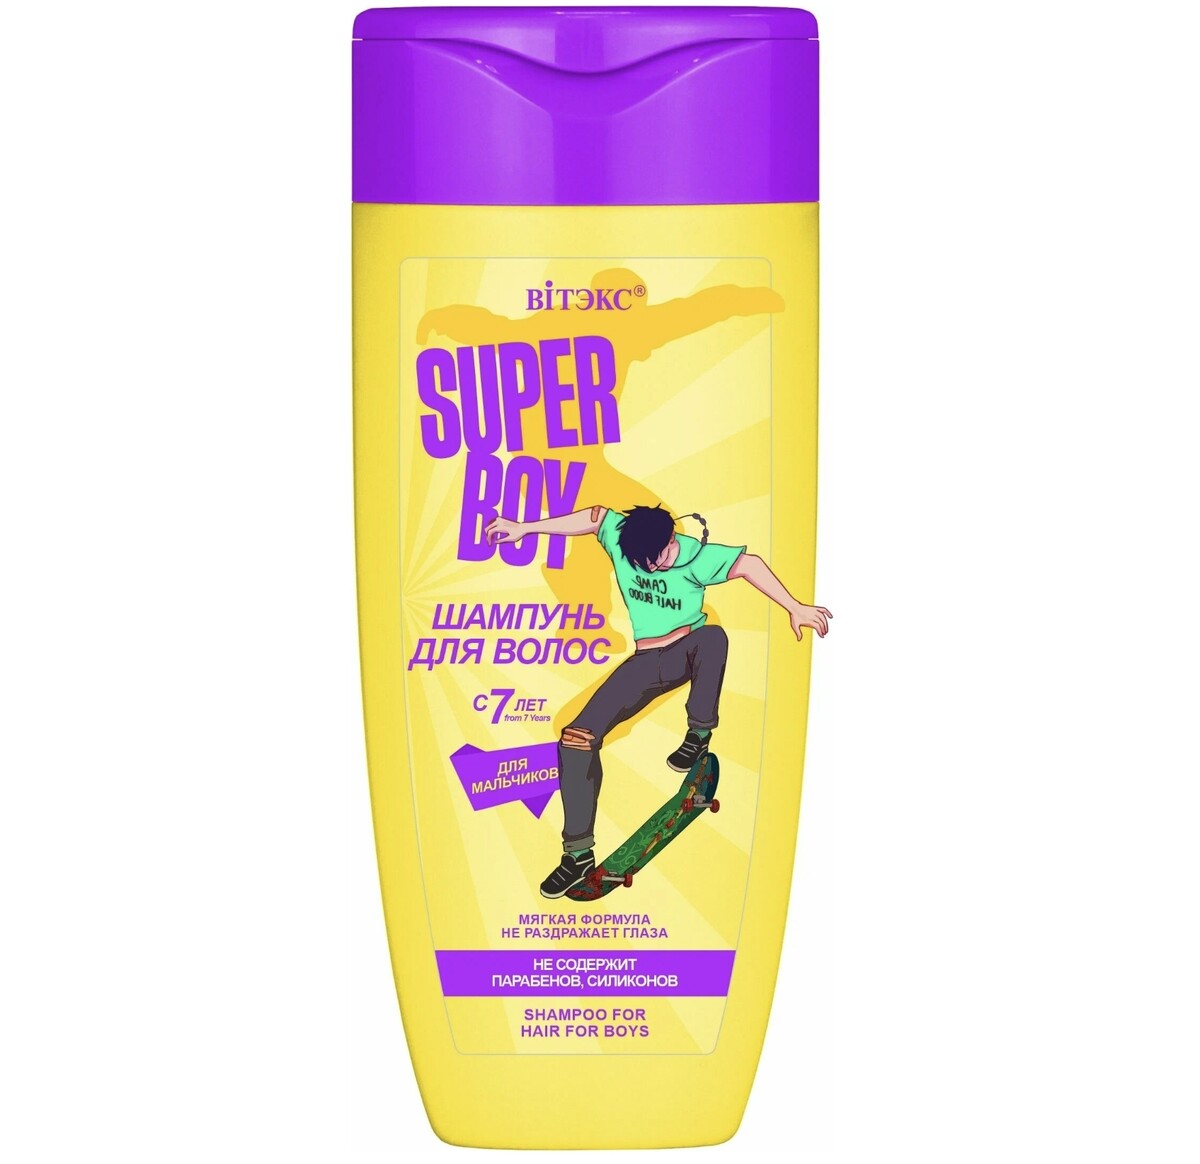 Super boy шампунь для волос для мальчиков с 7 лет, new 275мл осветлитель для волос rowena super